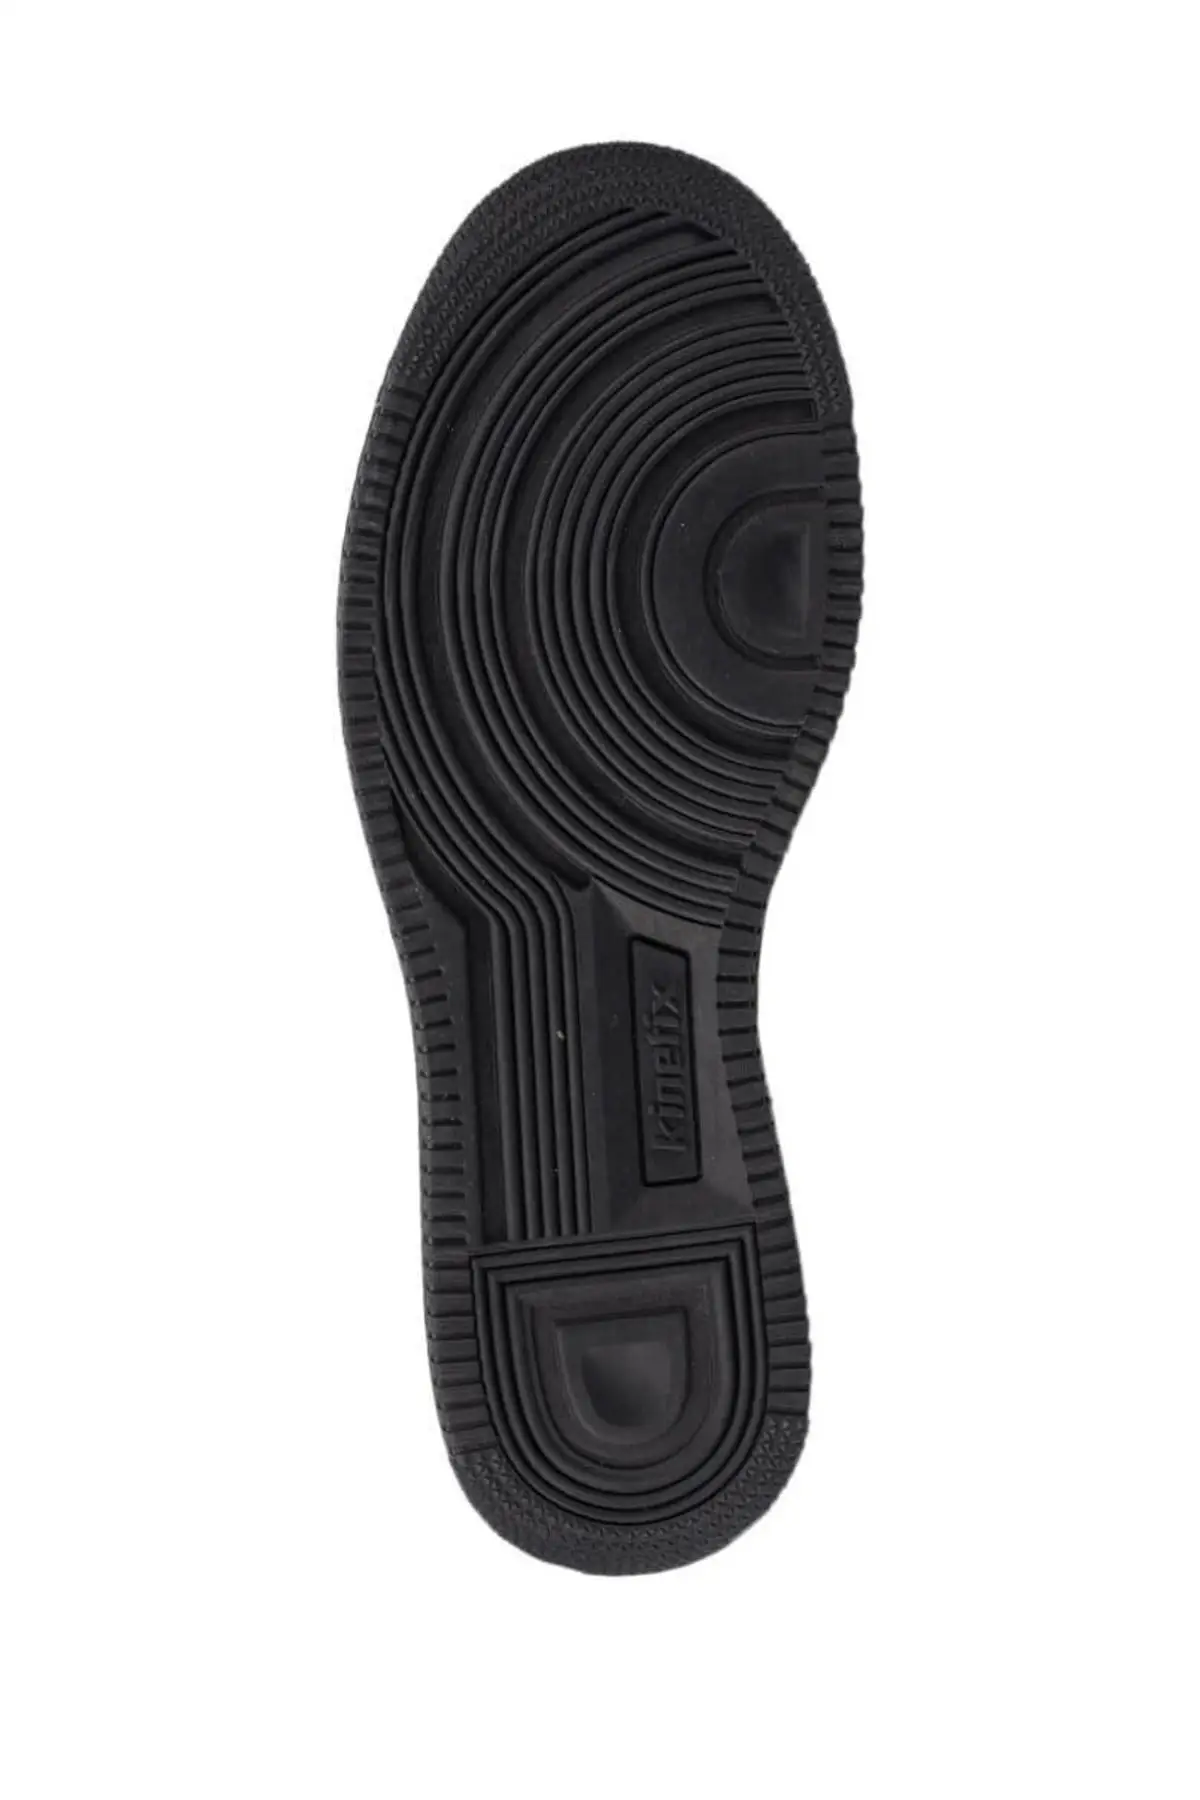 

SarEn Charle 9pr Navy Blue Men's Thick Sole Sneaker Sport Shoes (Kinetix)